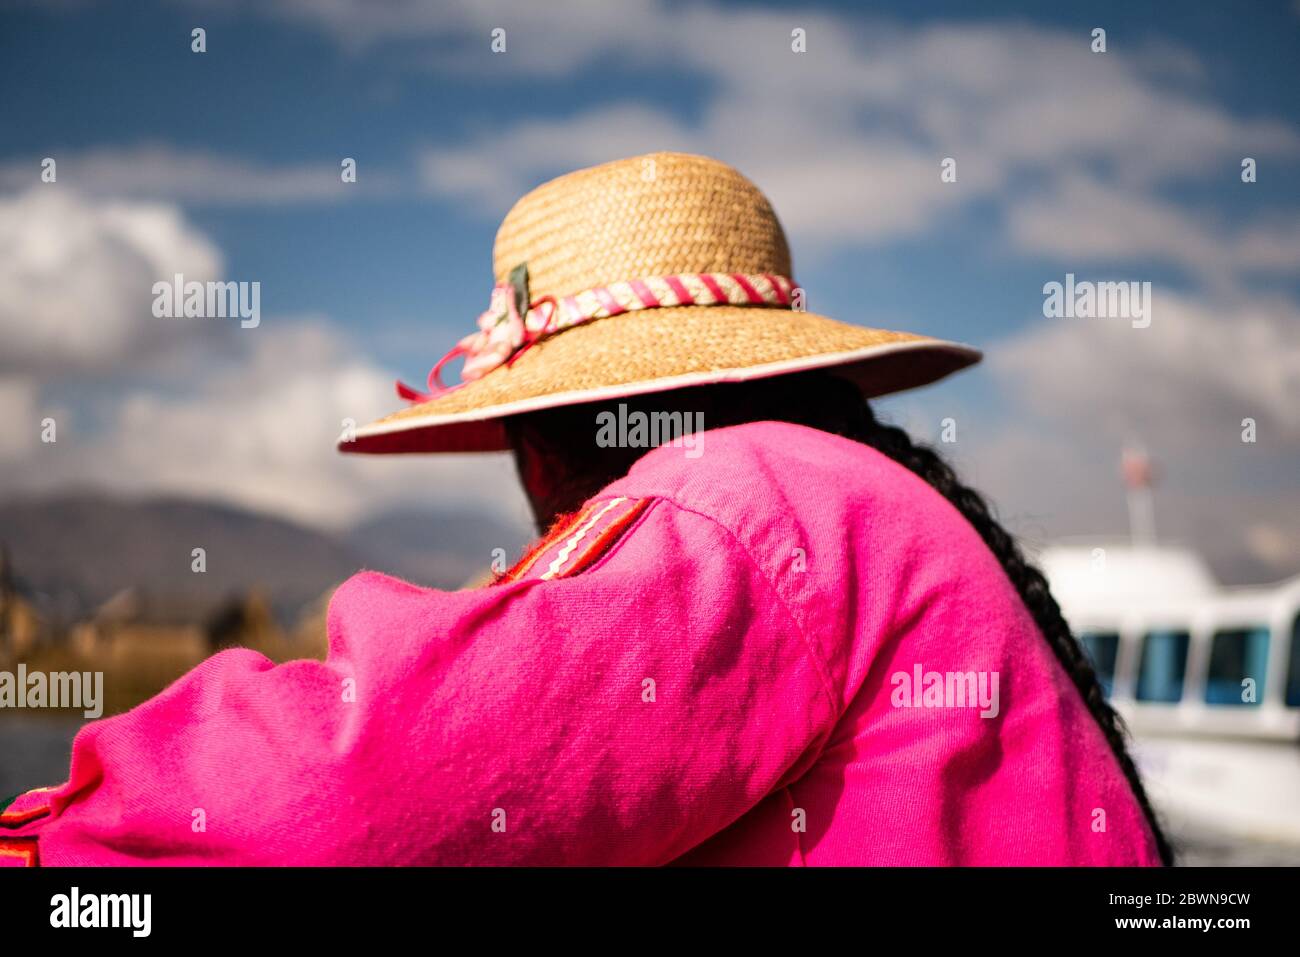 La femme de la communauté Uros sur le bateau traditionnel fait de totora roseaux avec des touristes, portant des vêtements traditionnels, et un chapeau. Banque D'Images